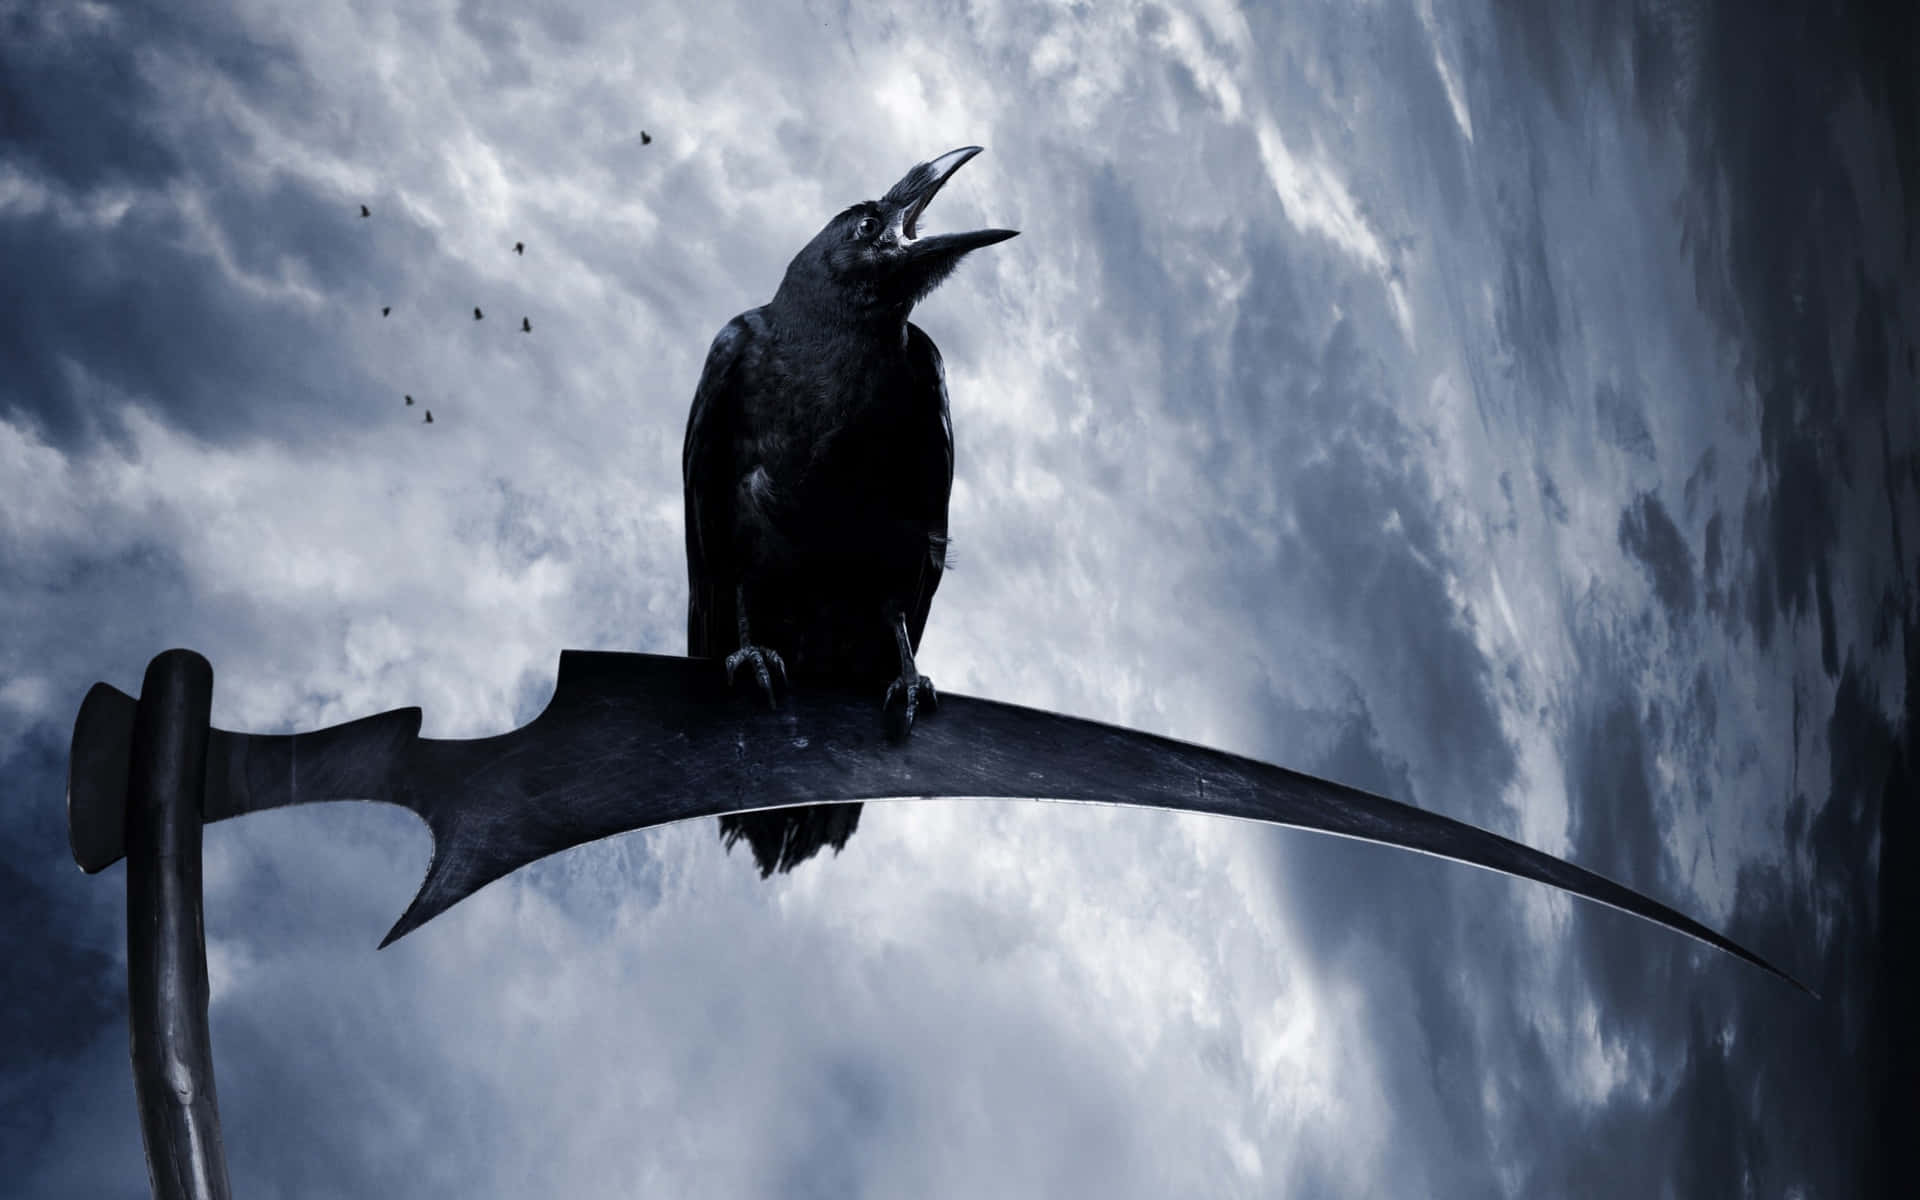 ravens flying wallpaper